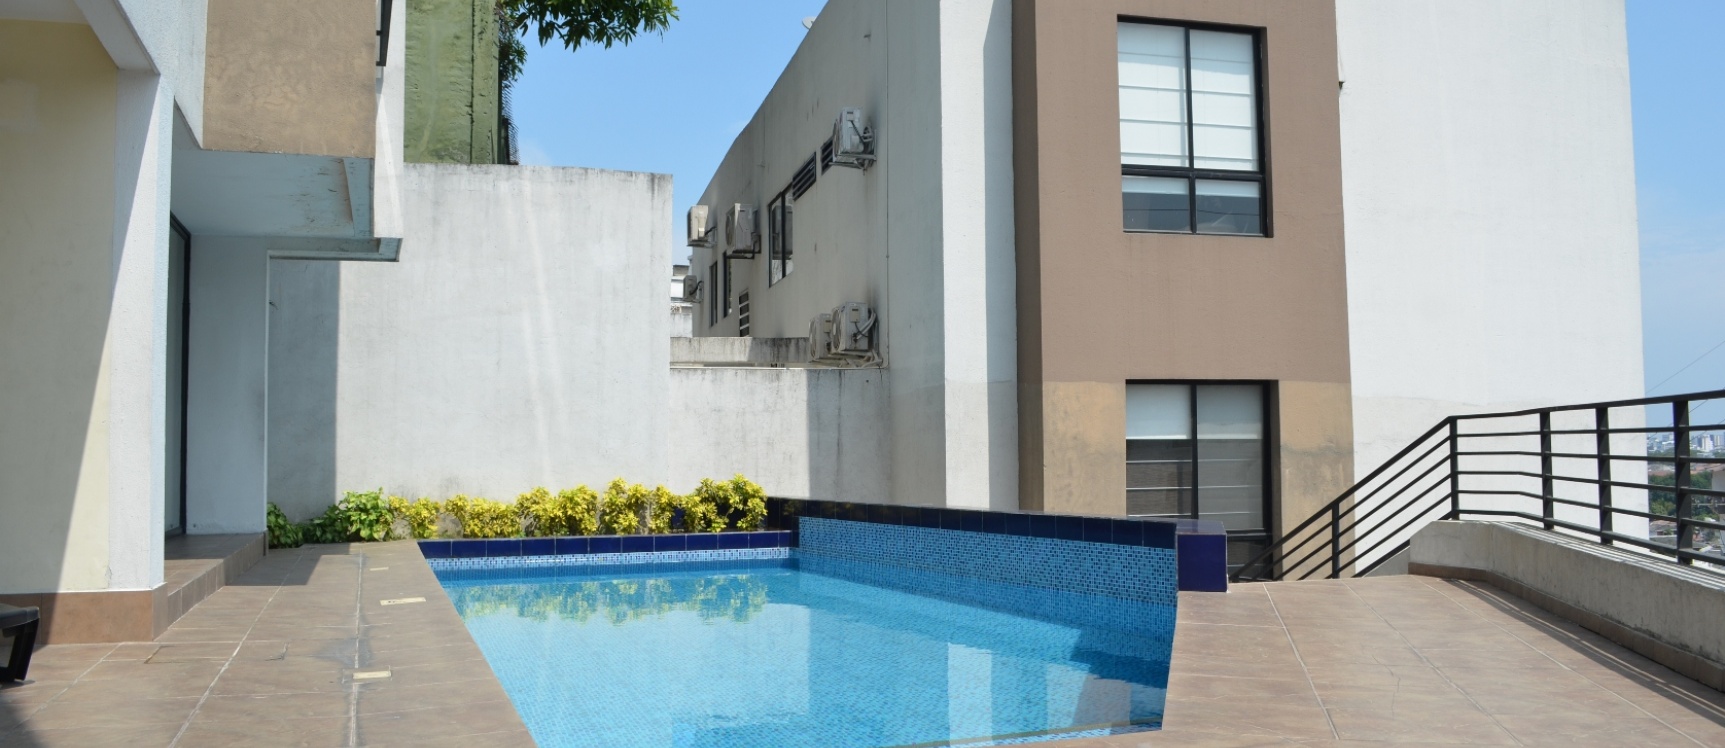 GeoBienes - Departamento en alquiler Edificio Alto Mirador Urdesa  - Plusvalia Guayaquil Casas de venta y alquiler Inmobiliaria Ecuador